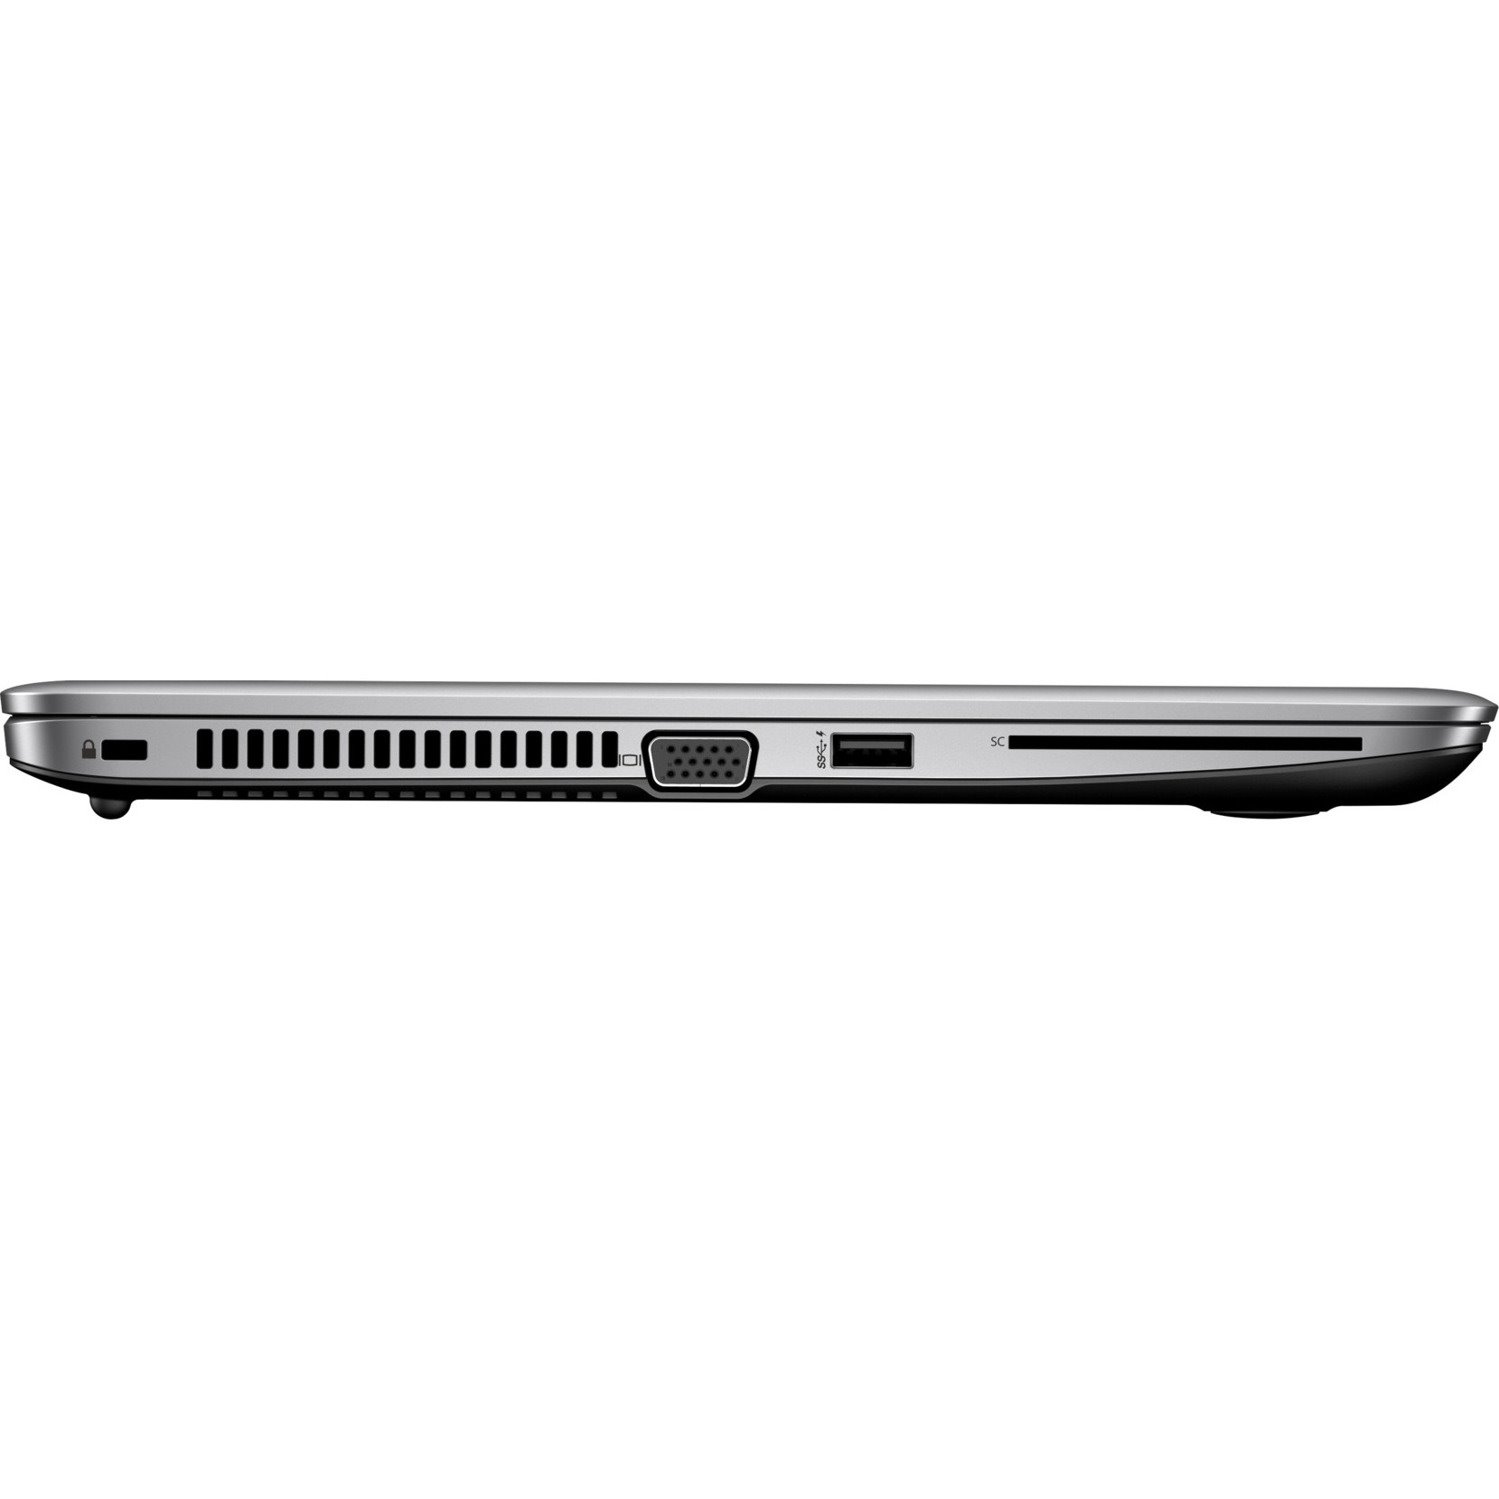 HP EliteBook 840 G3 14" Notebook - Intel Core i5 6th Gen i5-6300U Dual-core (2 Core) 2.40 GHz - 8 GB Total RAM - 256 GB SSD